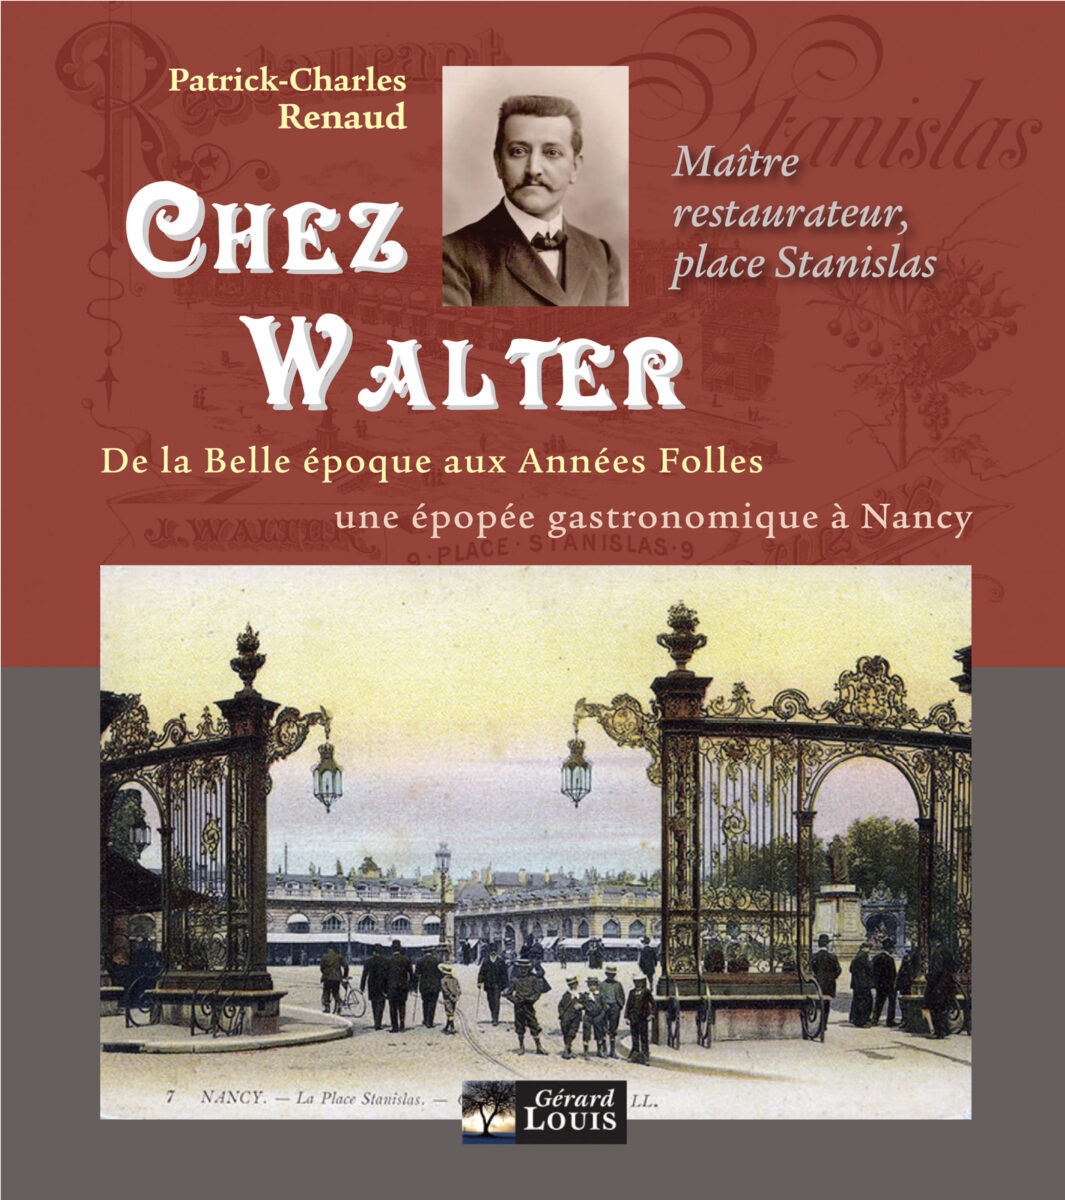 Julien Walter. Arrivé à Nancy en 1878, a racheté en 1893 le plus célèbre restaurant de la place Stanislas. 